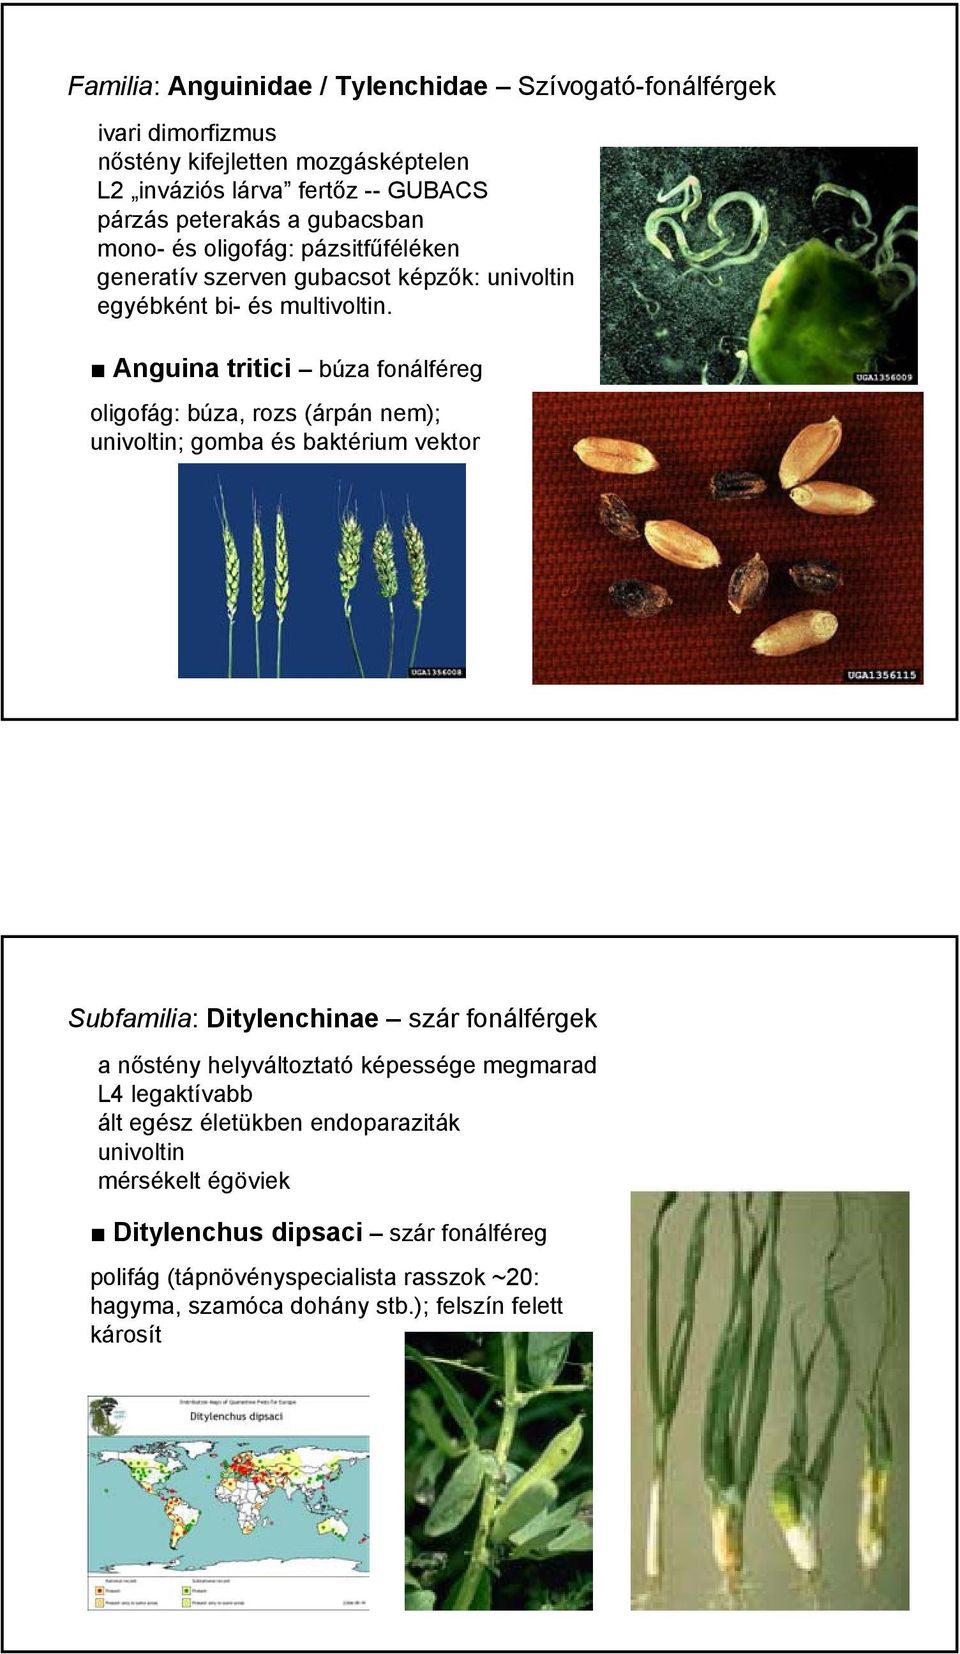 Anguina tritici búza fonálféreg oligofág: búza, rozs (árpán nem); univoltin; gomba és baktérium vektor Subfamilia: Ditylenchinae szár fonálférgek a nőstény helyváltoztató